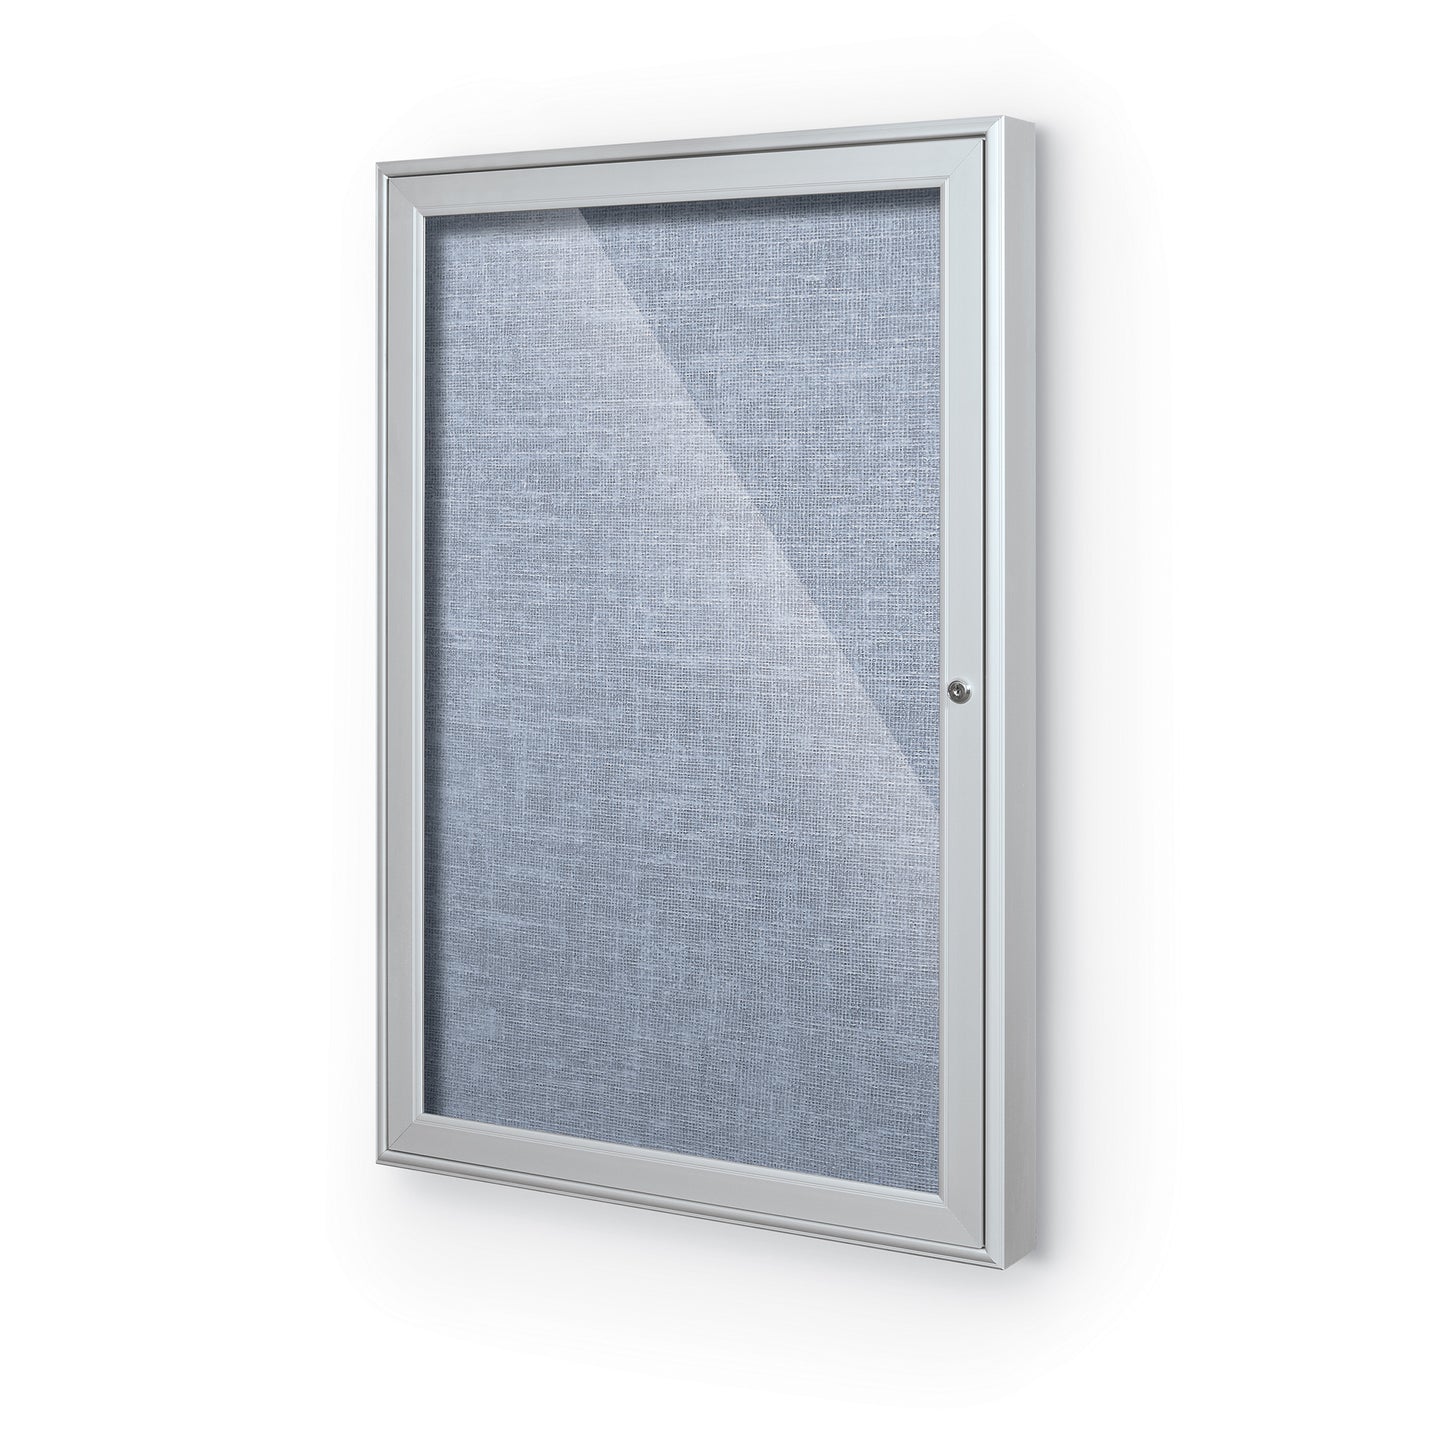 Mooreco Indoor Enclosed Bulletin Board Cabinet - 1, 2 or 3 Door - Silver Aluminum Trim